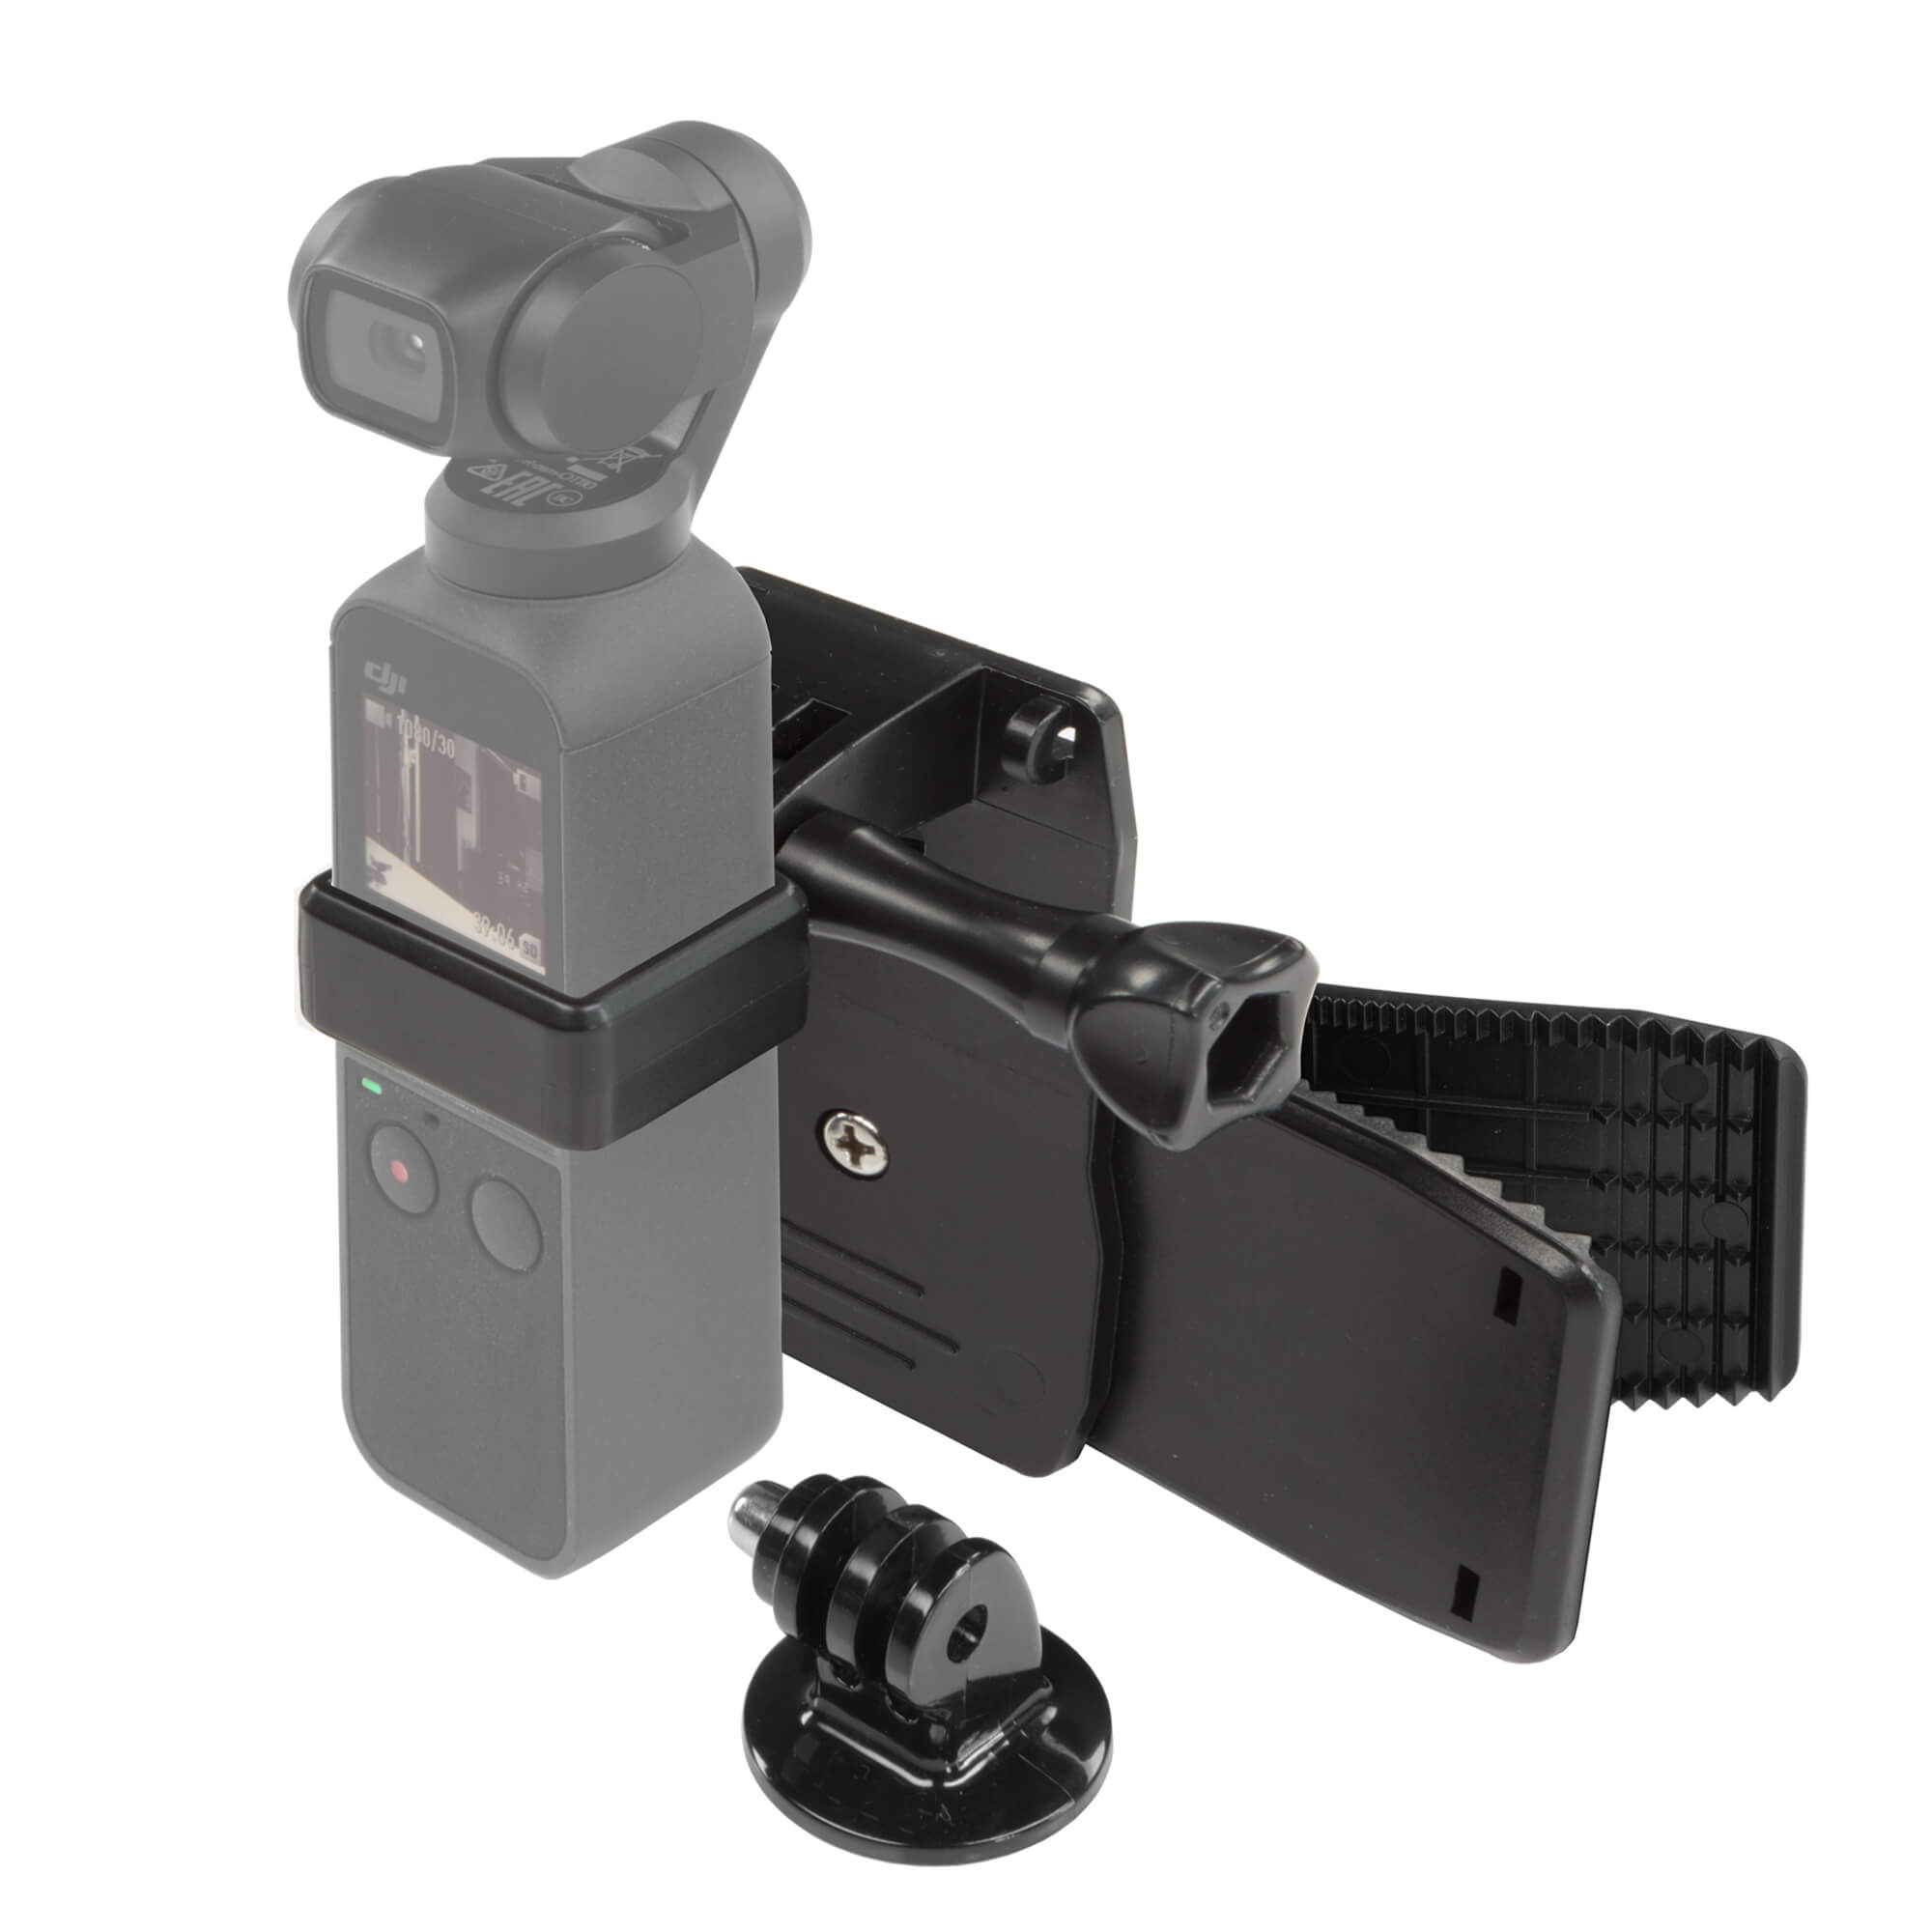 Camera Bracket Holder Mount Base & Backpack Clip For DJI OSMO Pocket Gimbal #BS